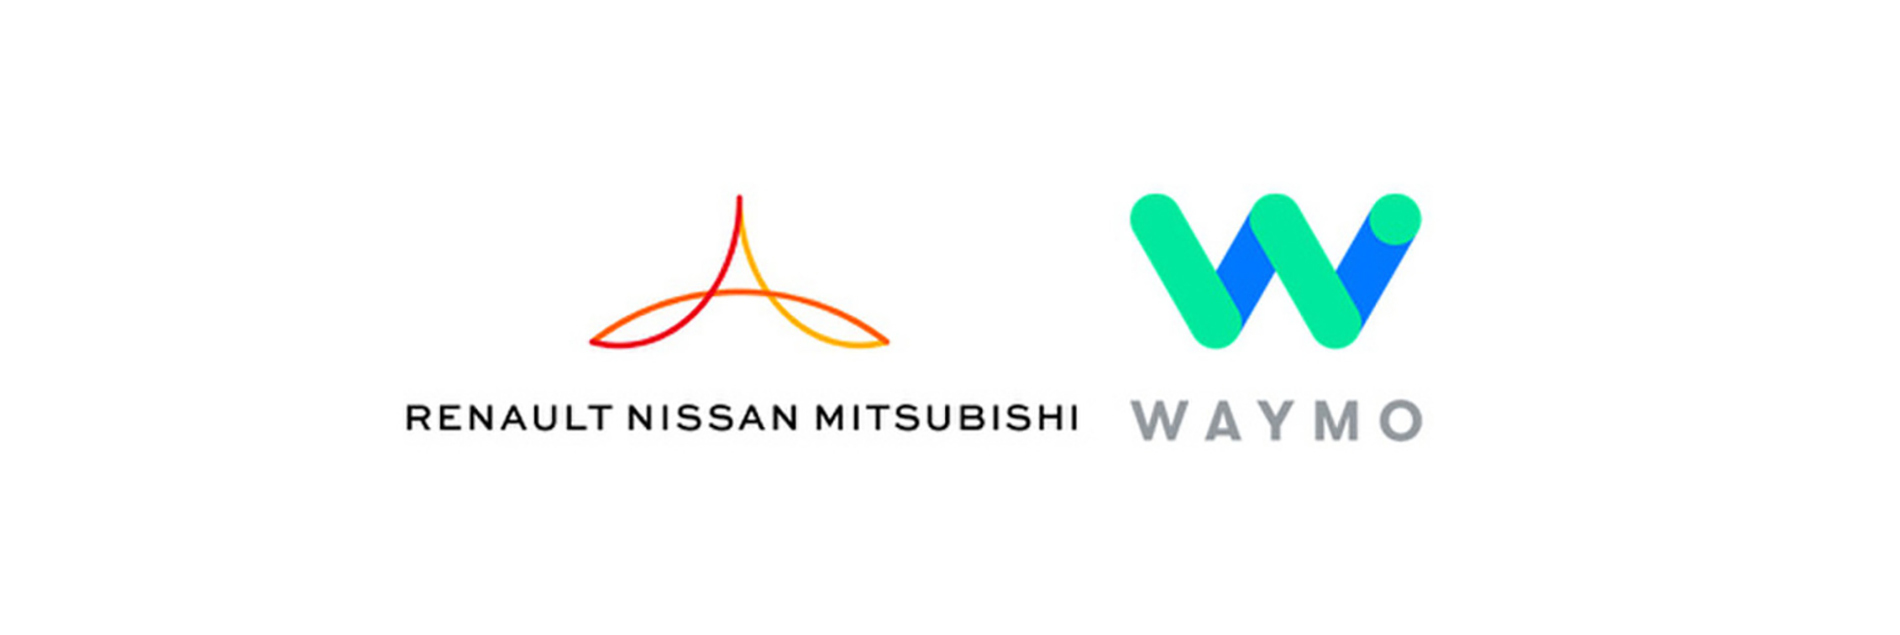 Nissan и Renault подписали с Waymo эксклюзивный договор с целью развития сервисов беспилотного транс